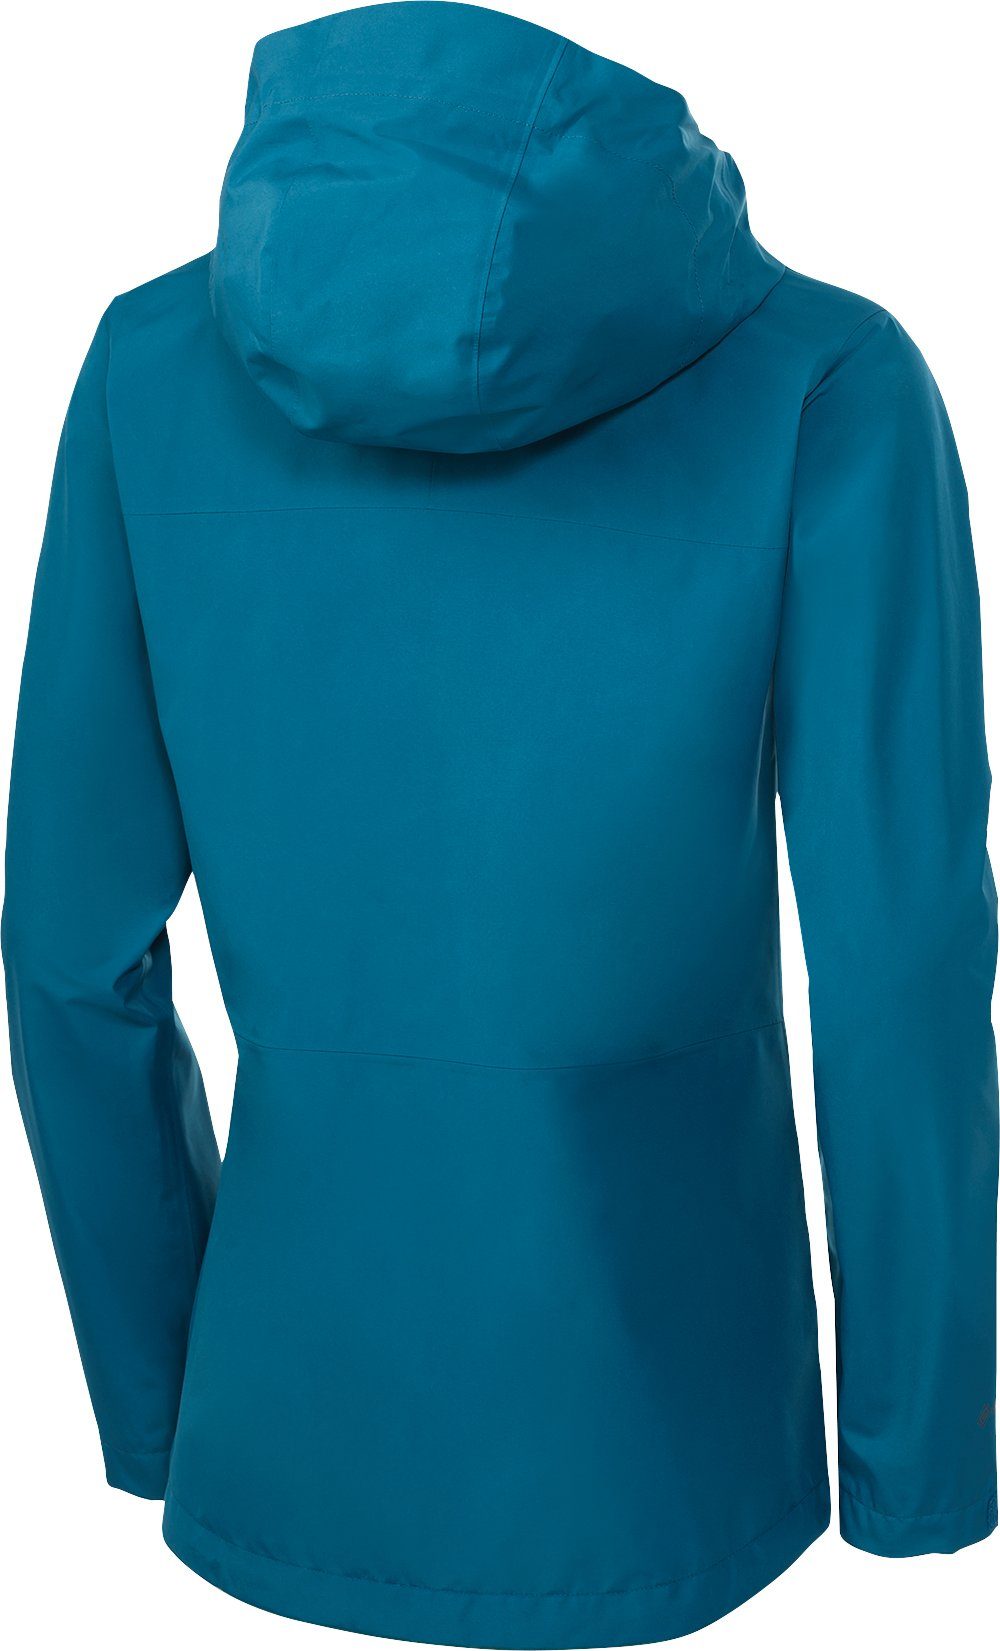 Damen Jacken Berghaus Funktionsjacke Saum mit elastischem Schnürzug und regulierbare Kapuze mit Schild